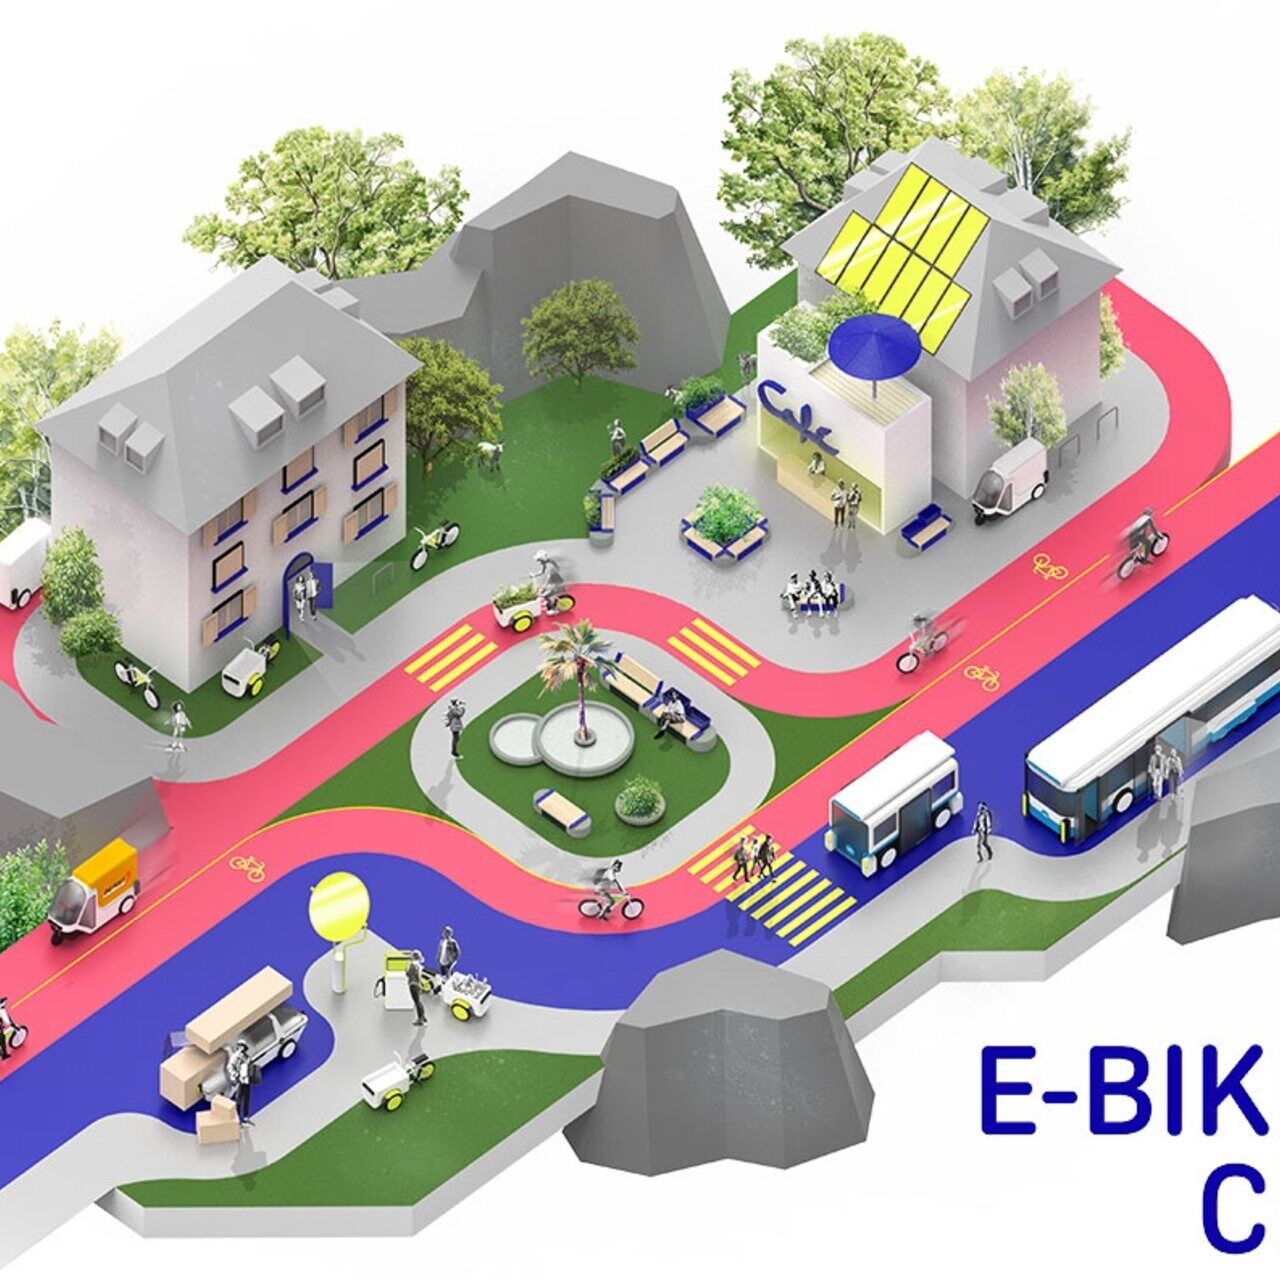 Elektrokola: stylizovaný příklad města E-​Bike City s jednosměrnými ulicemi pro auta a obousměrnými ulicemi pro kola